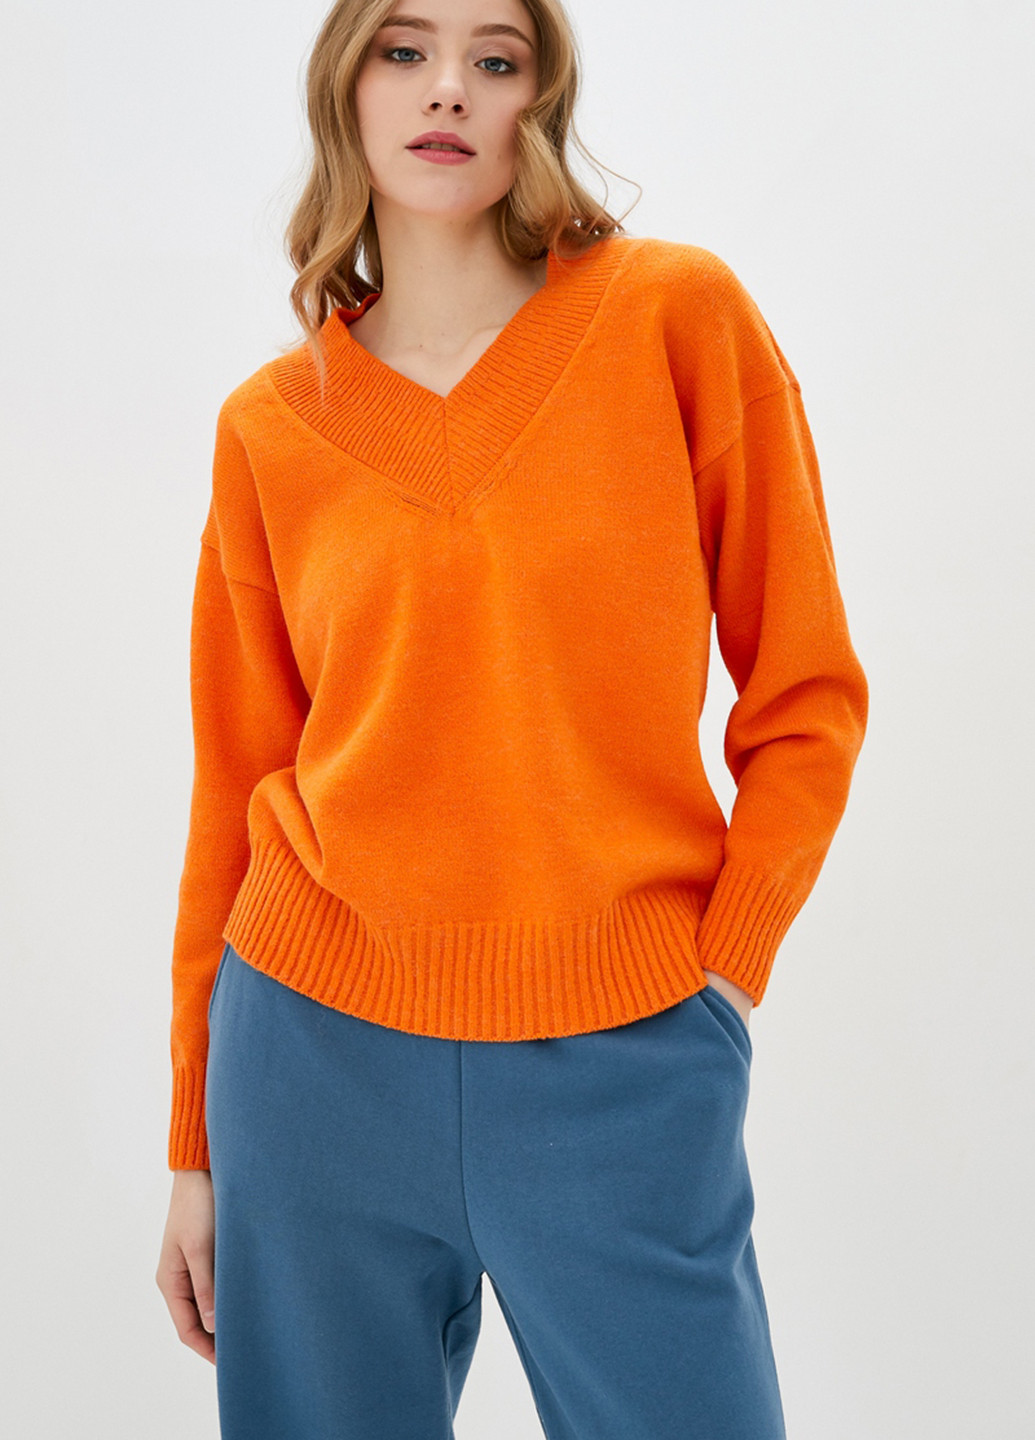 Оранжевый демисезонный пуловер пуловер Sewel